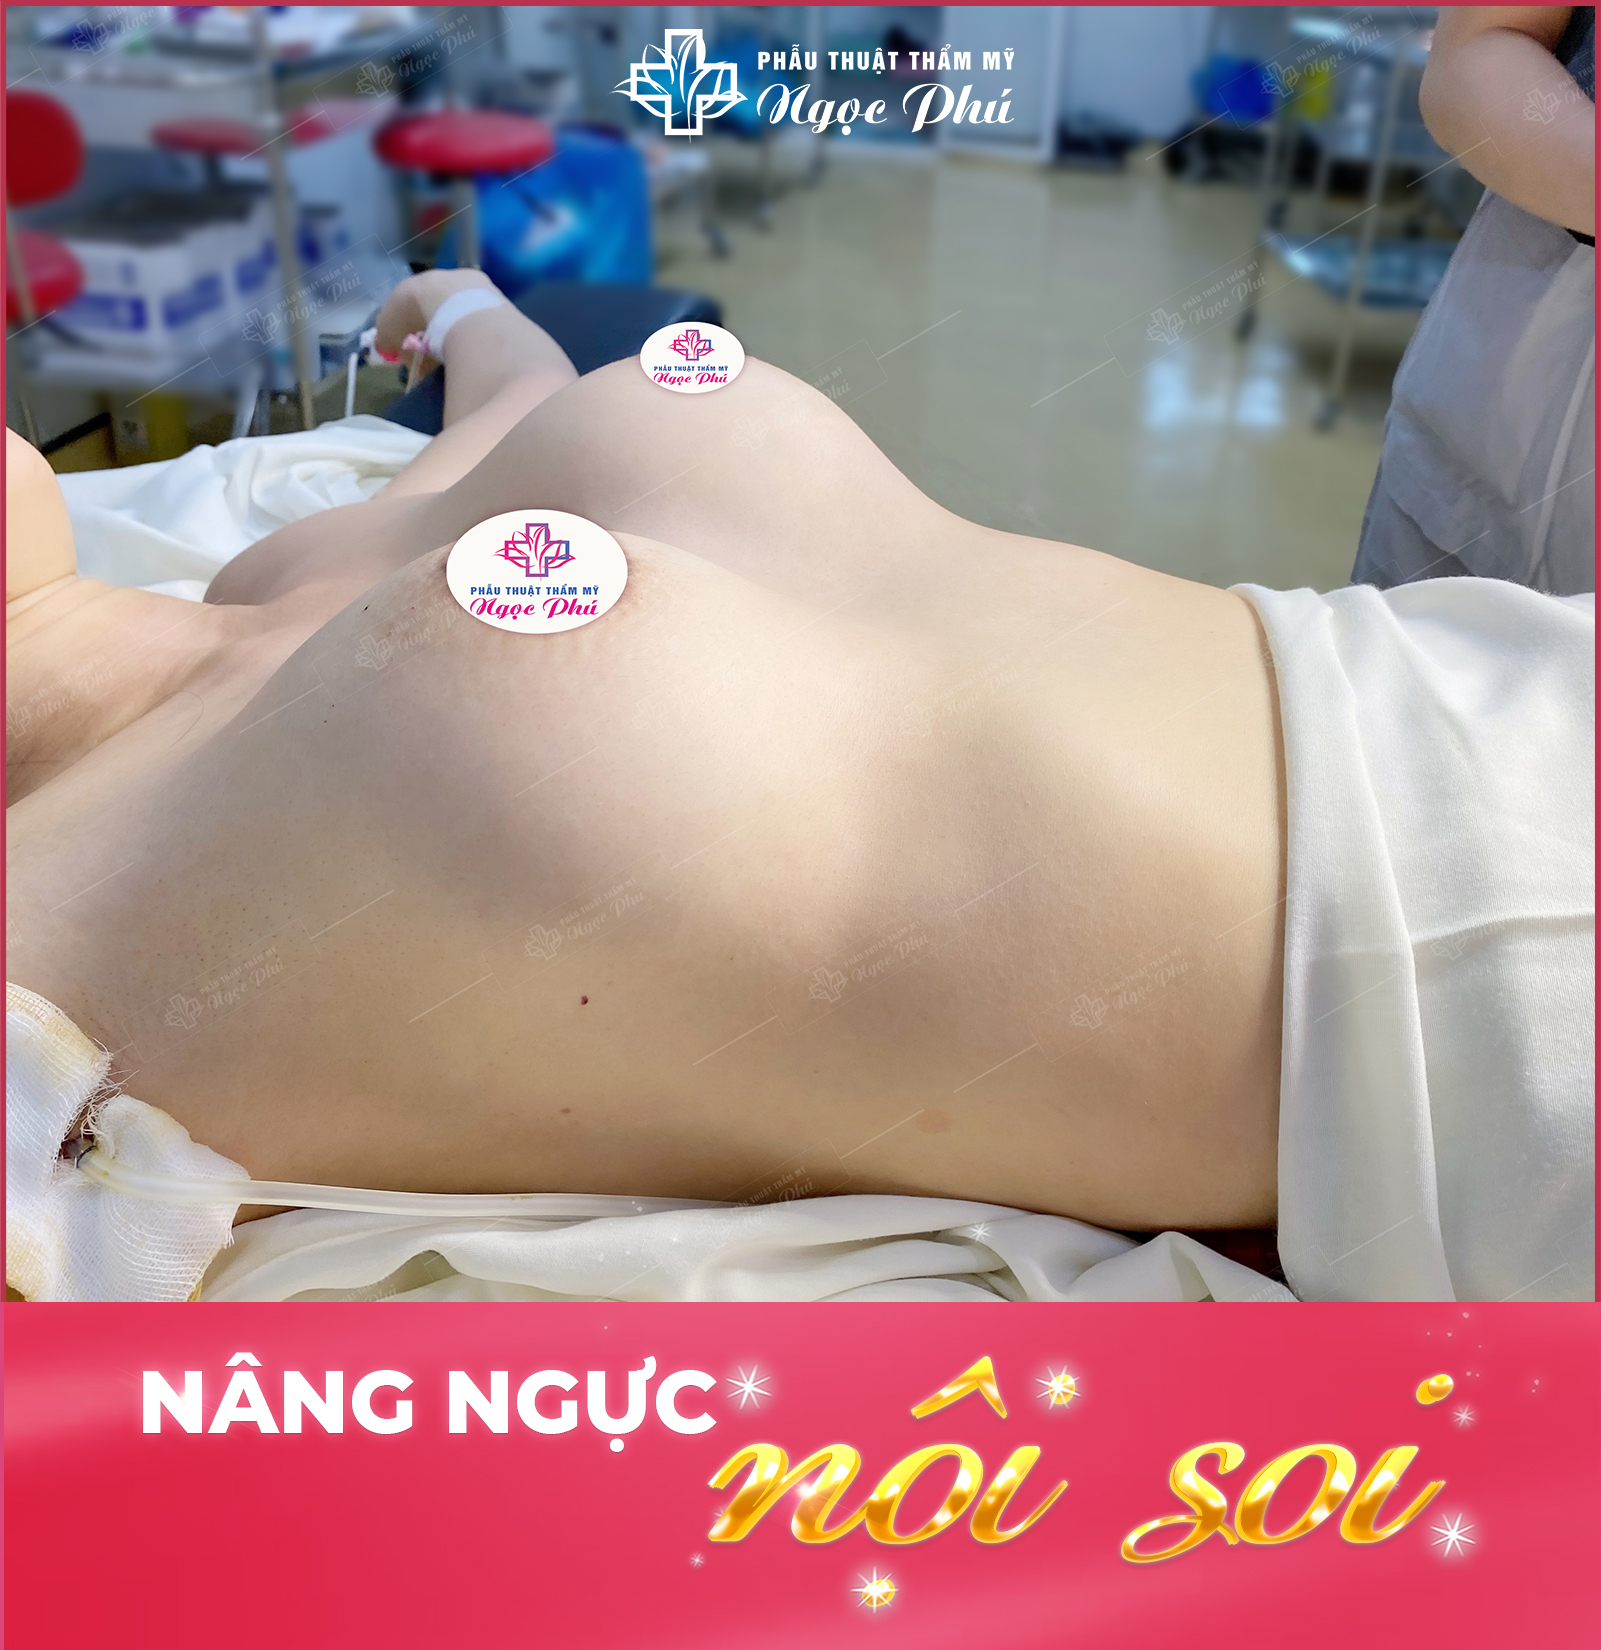 Hình ảnh khách hàng thực tế nâng ngực tại Thẩm mỹ Ngọc Phú